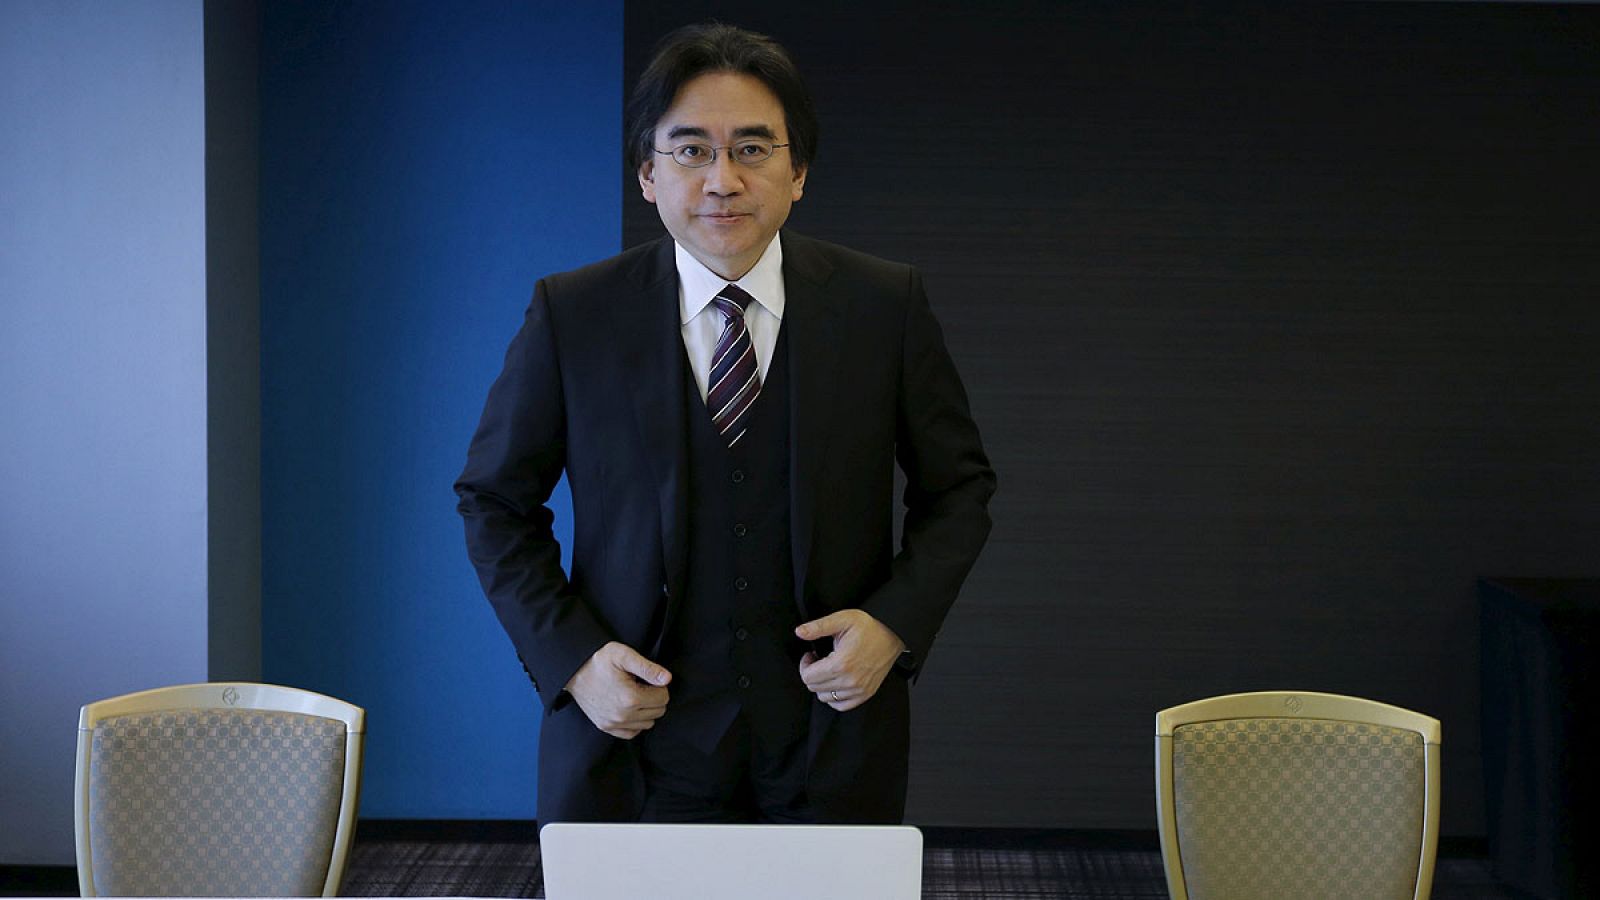 El presidente de Nintendo, Satoru Iwata, en una imagen de archivo de mayo de 2014